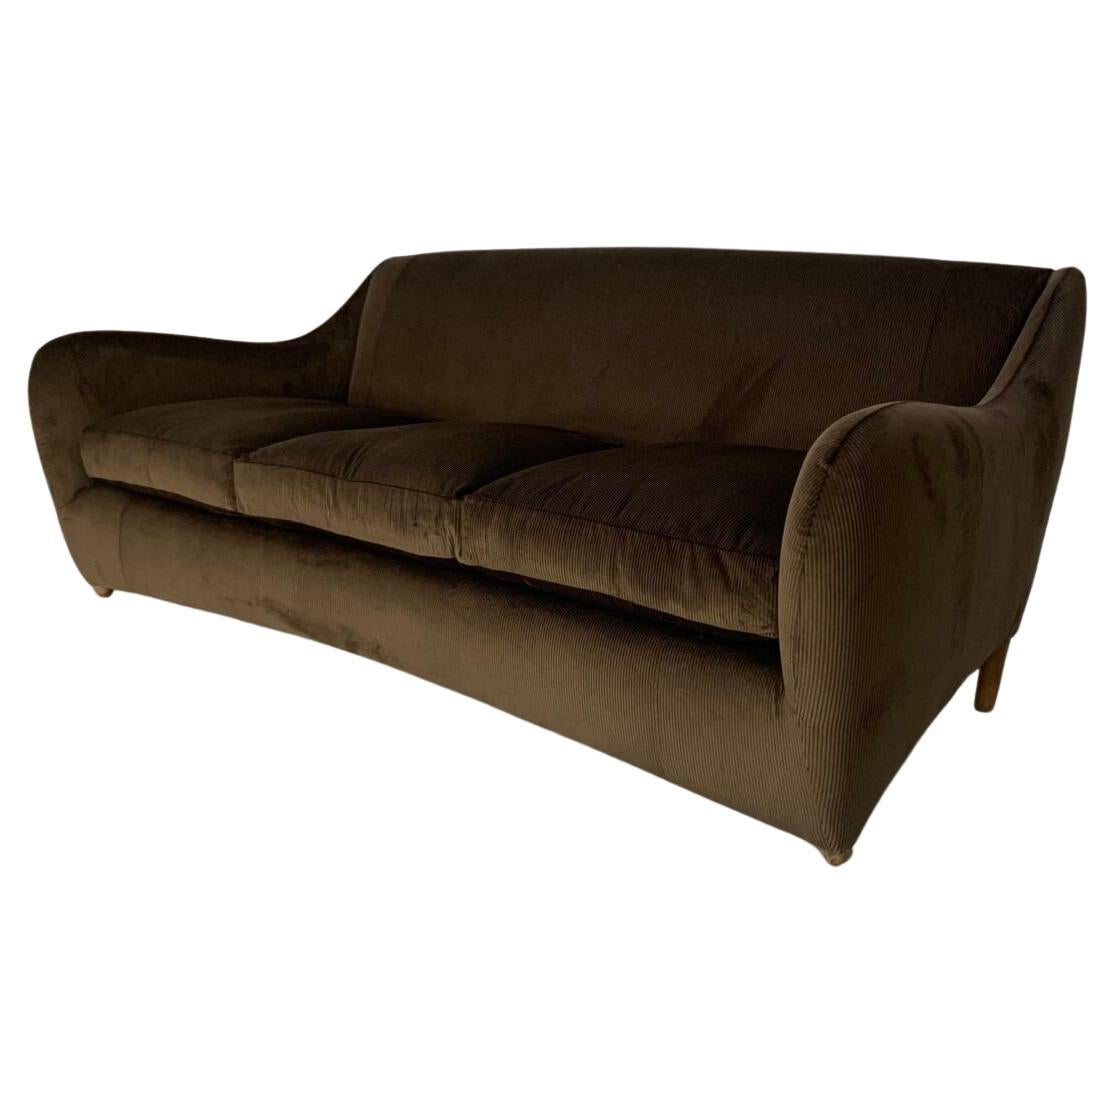 SCP Conran Matthew Hilton "Balzac" 3-Seat Sofa - In Dark Brown Cord